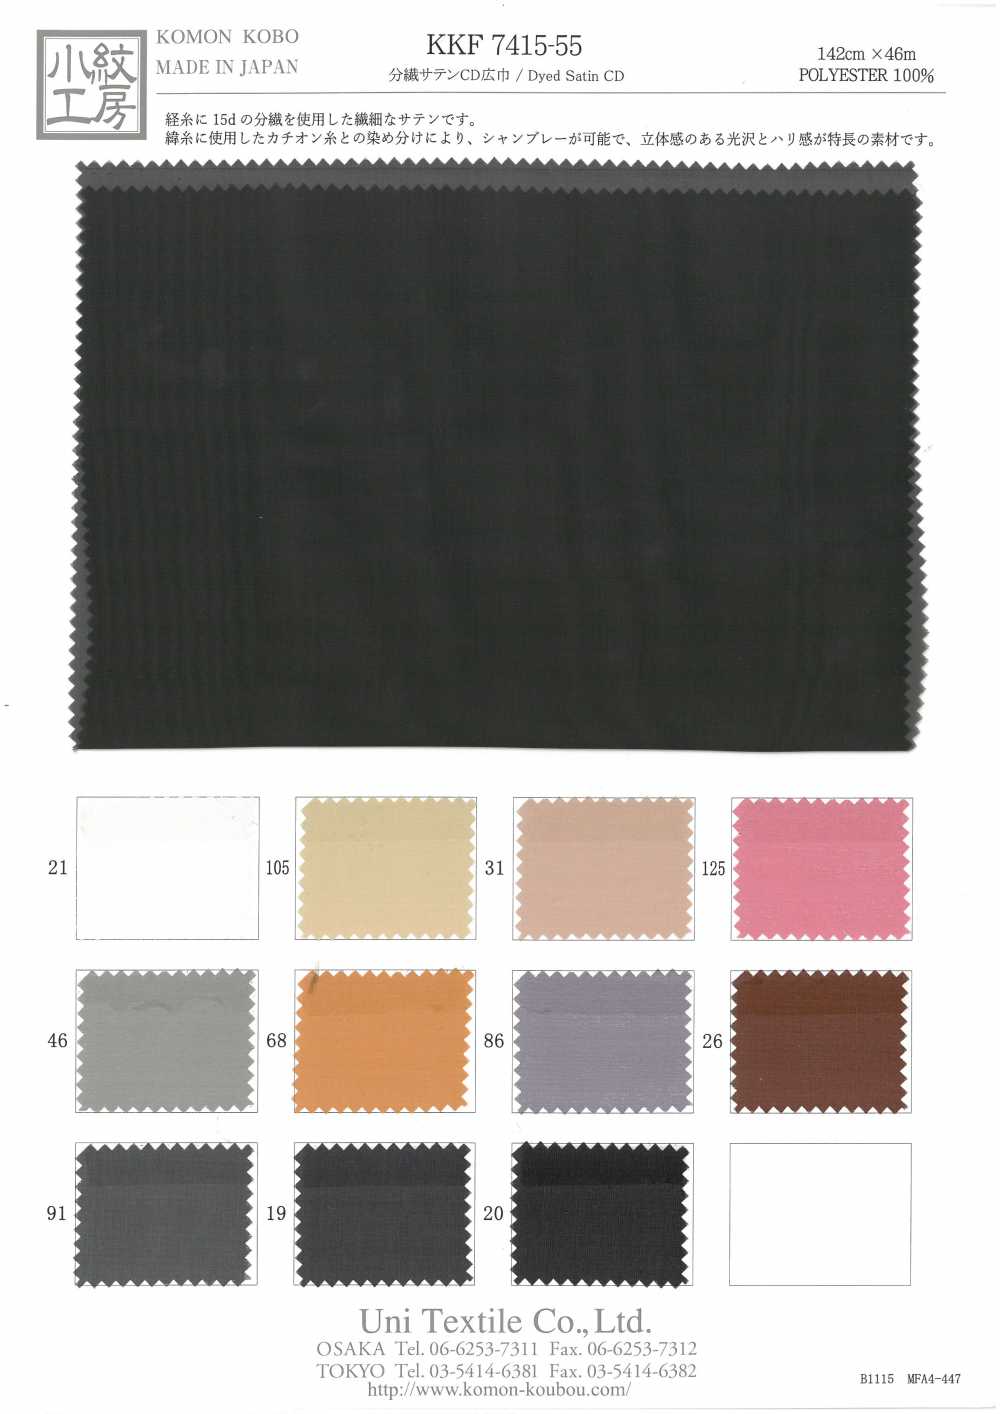 KKF7415-55 Split Fibre Satin CD Breite Breite[Textilgewebe] Uni Textile